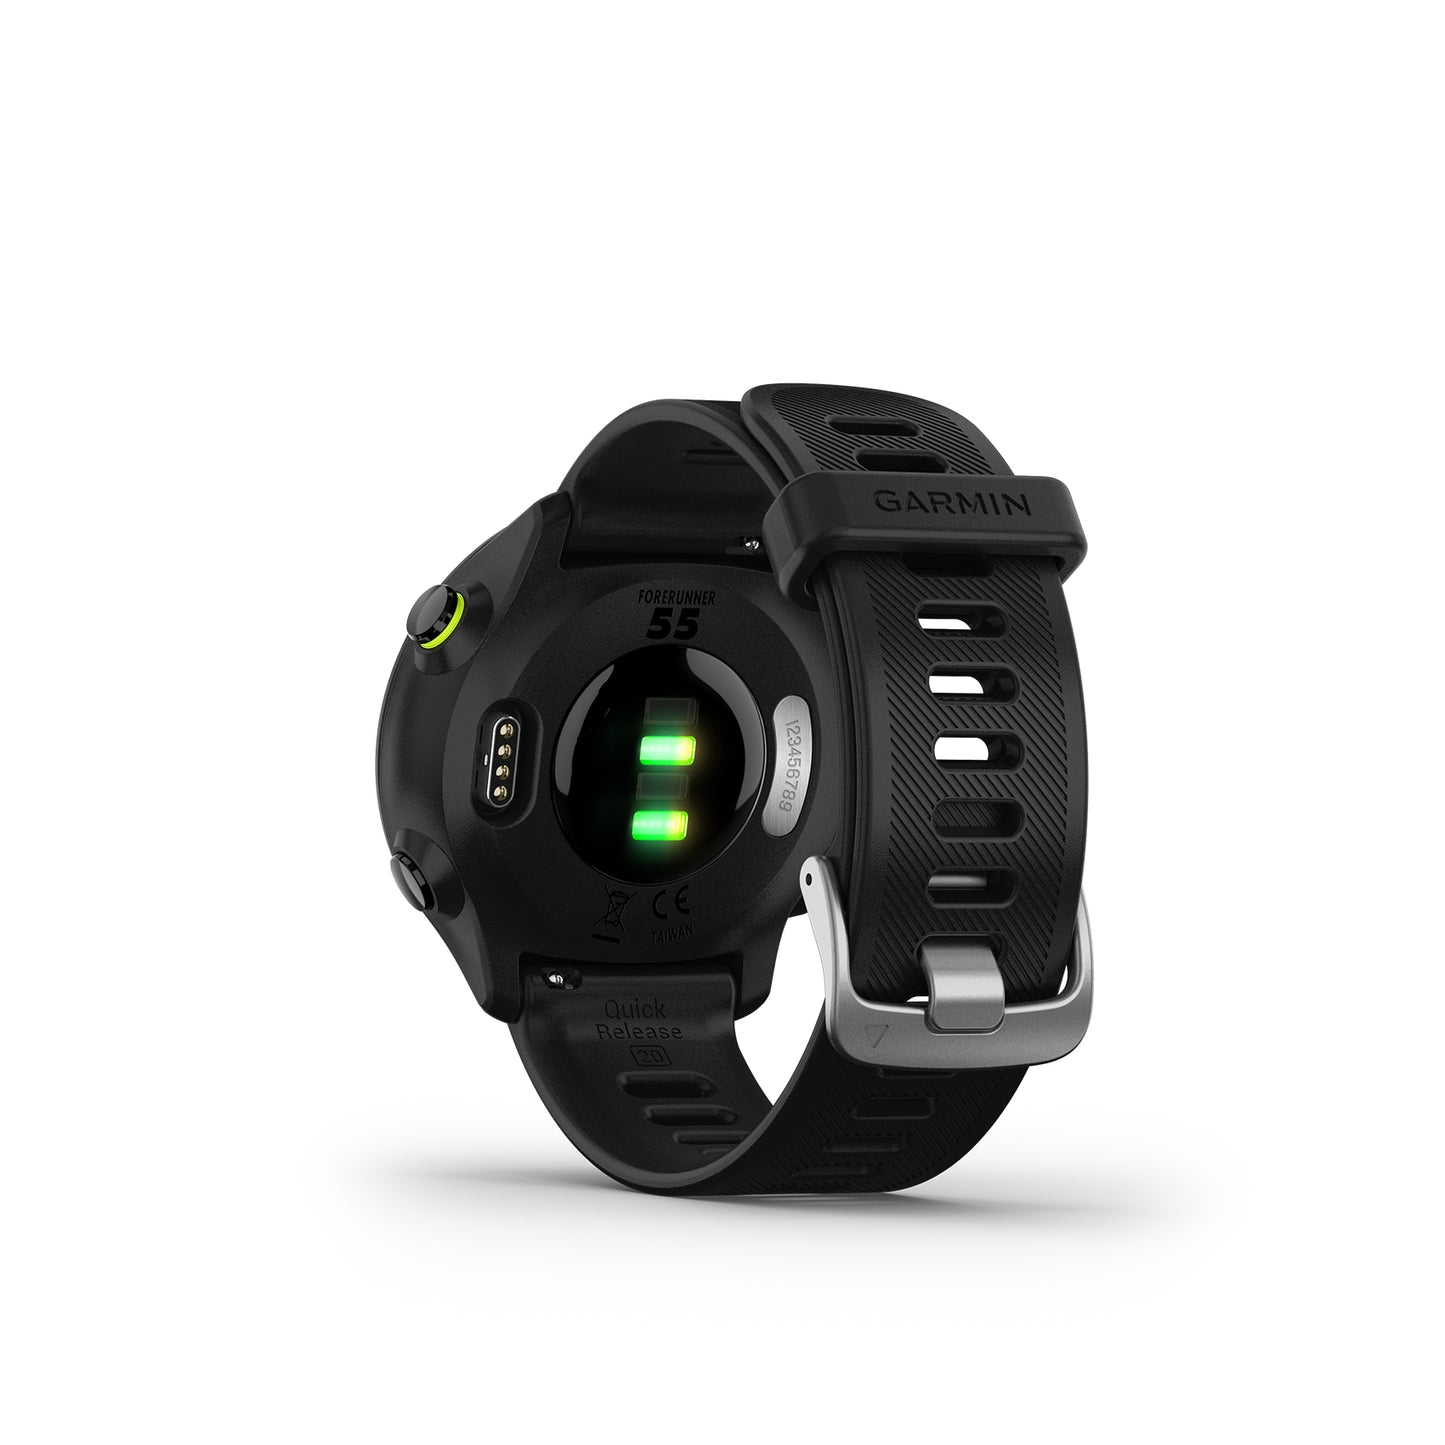 Forerunner 55 Smartwatch - Aqua – Gazelle Sports